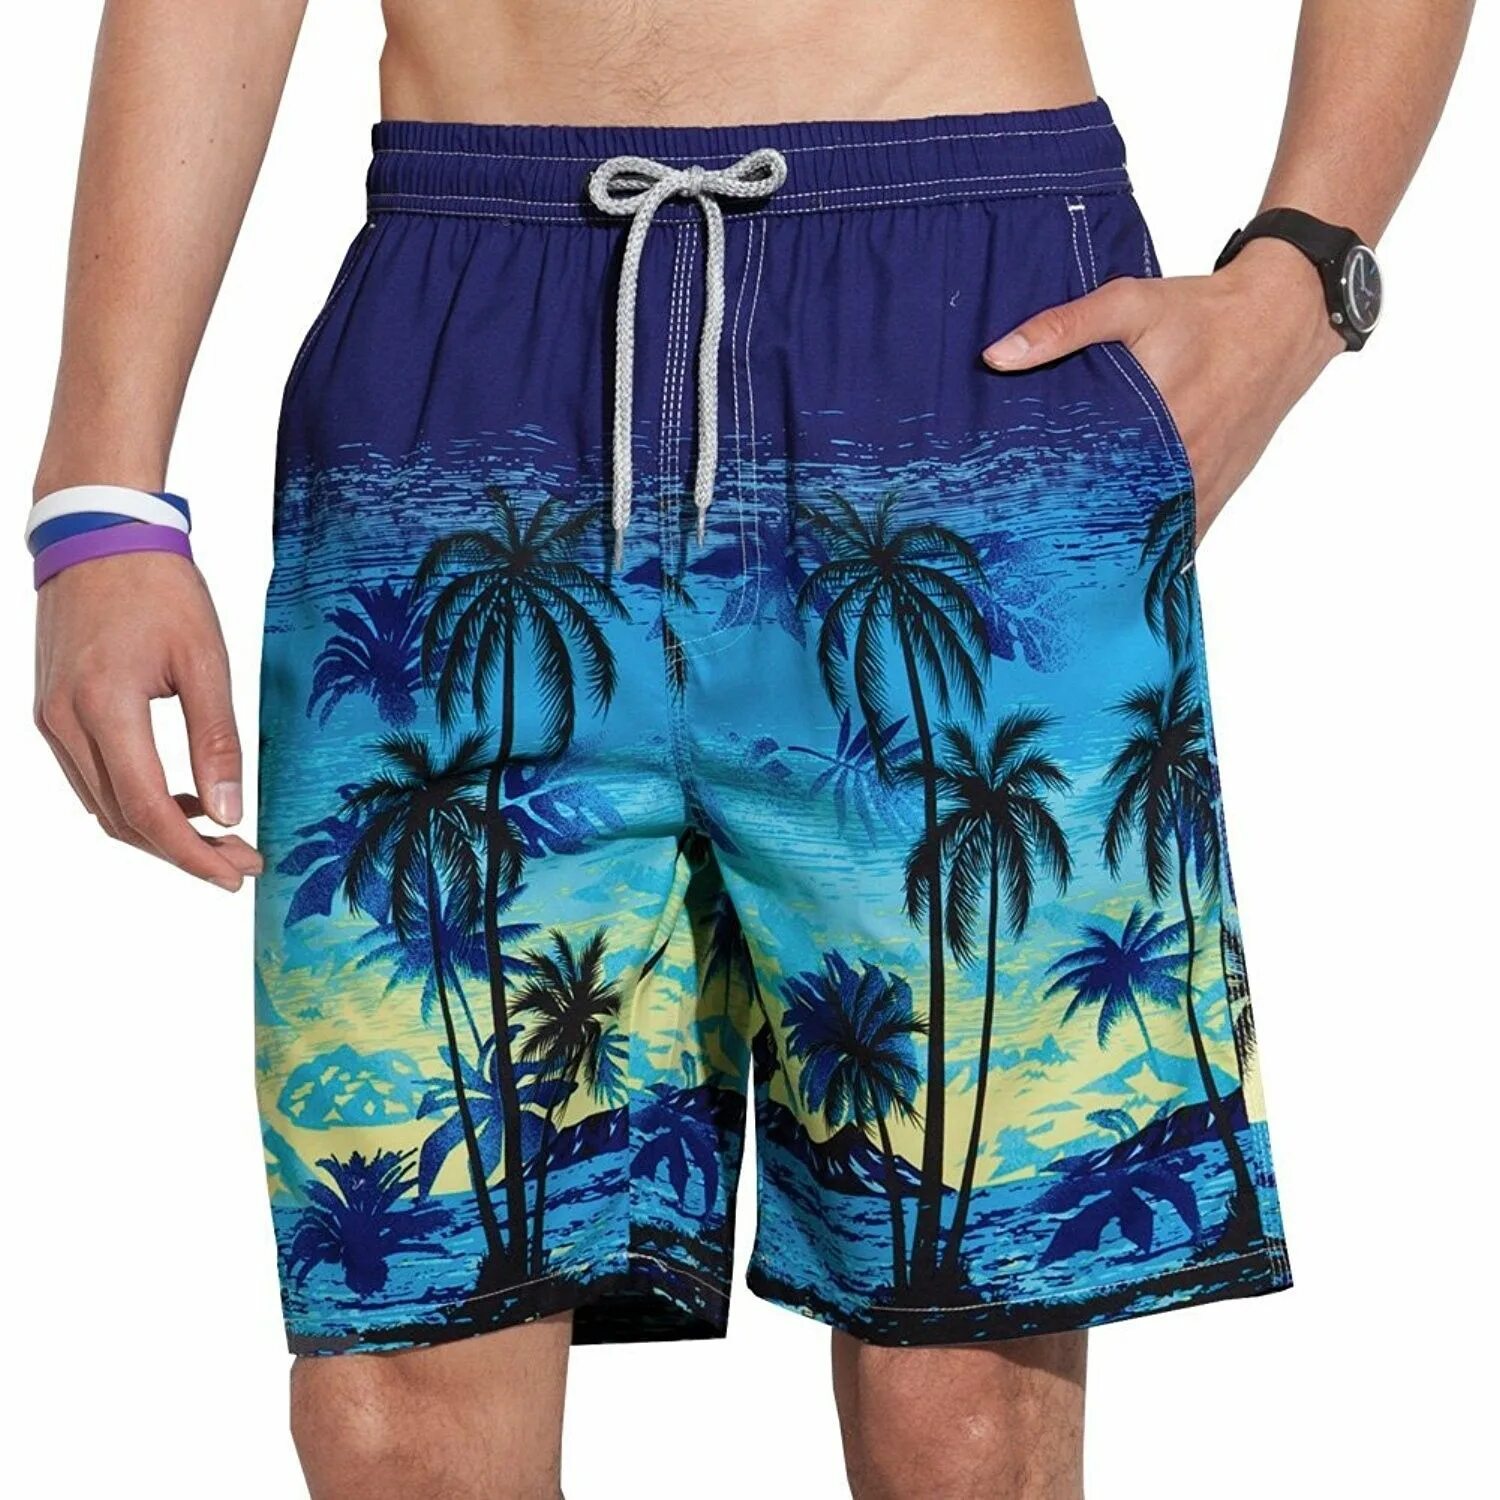 Reyn Spooner шорты мужские. Мужские плавательные шорты Venice Beach Eco. Плавательные шорты гуччи. Шорты с пальмами мужские. Шорты palm